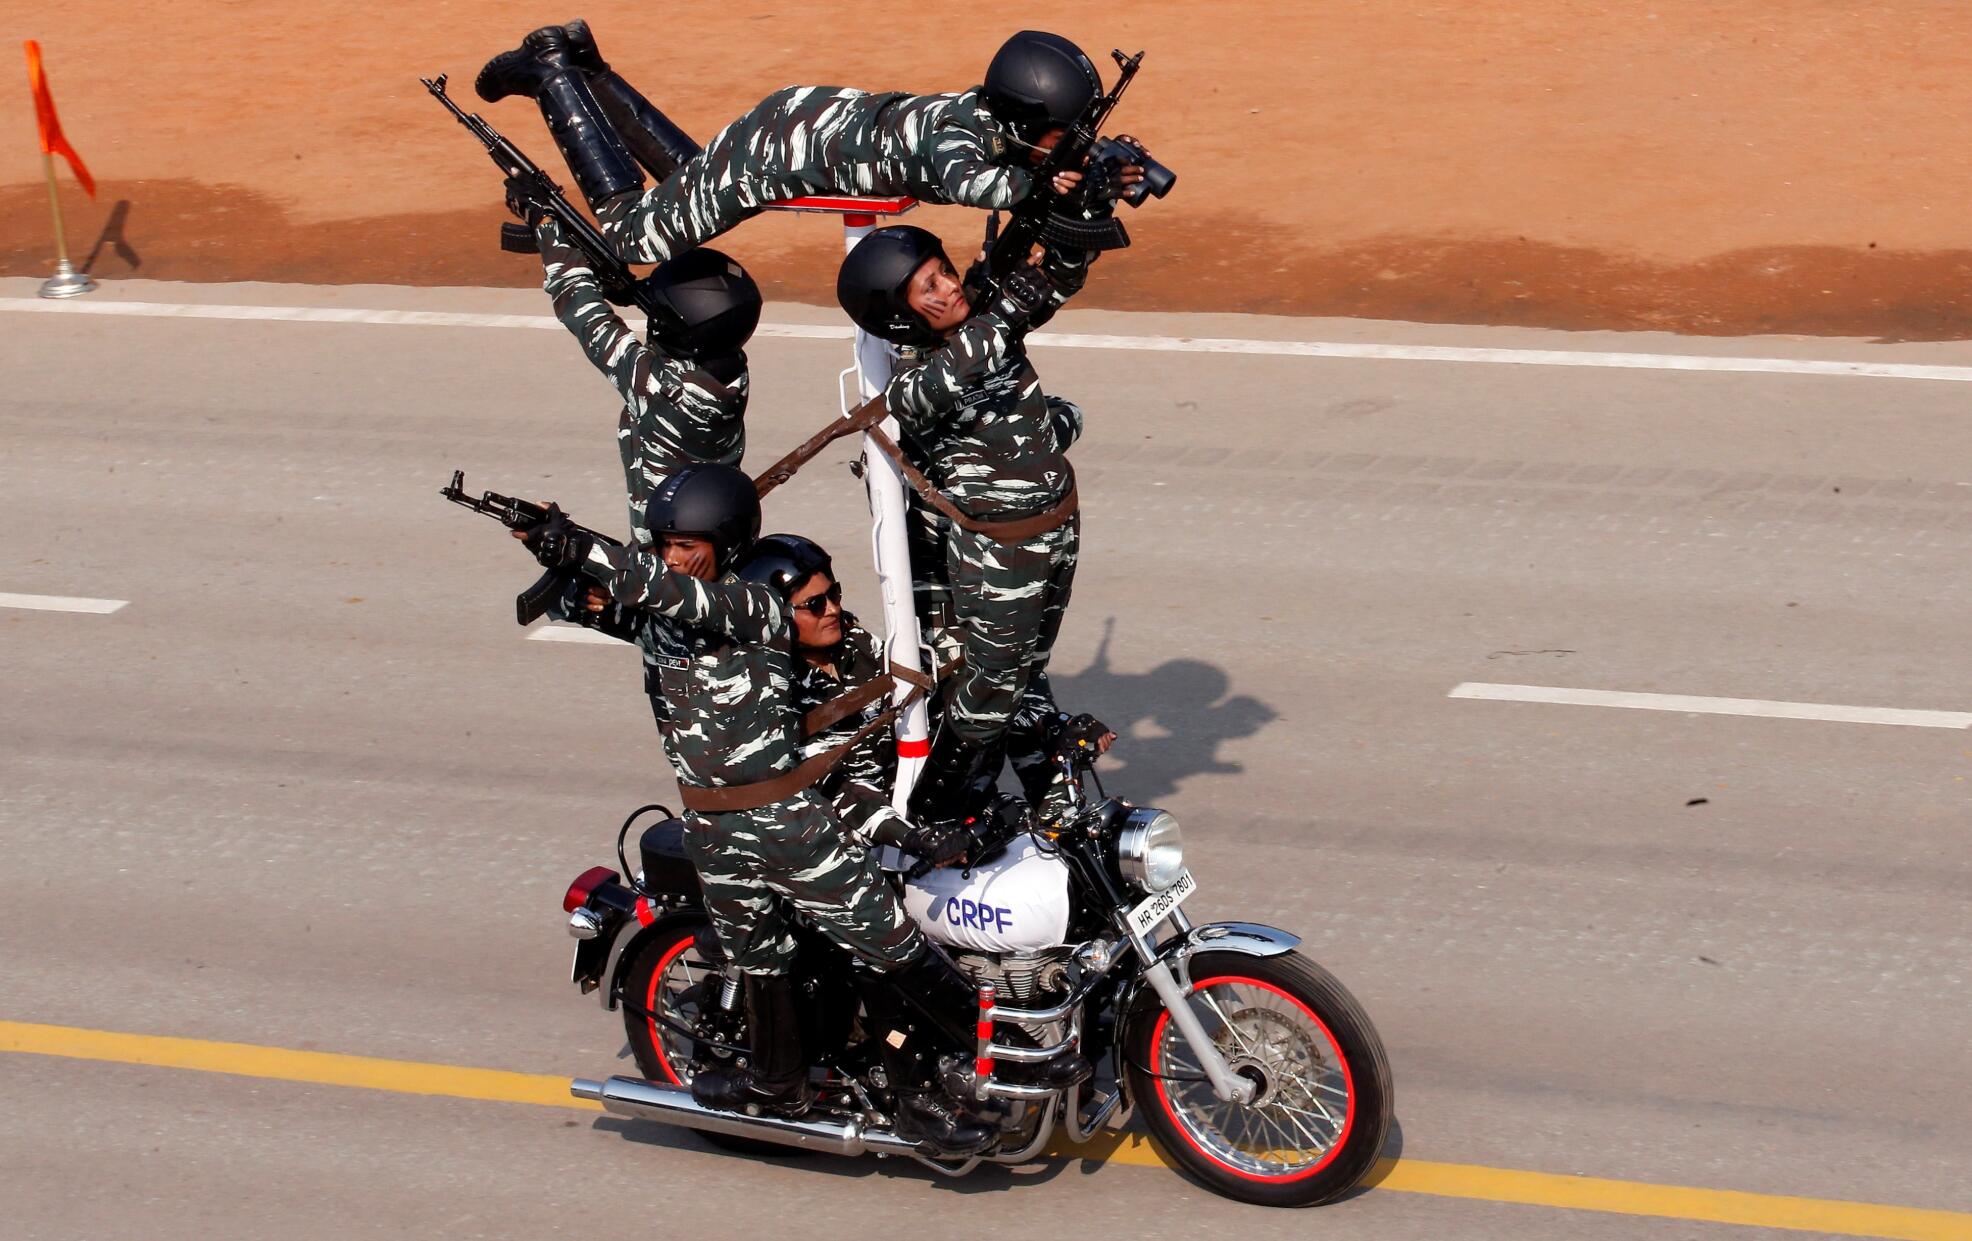 印度举行共和日阅兵彩排 士兵秀摩托车特技[4]- 中国日报网